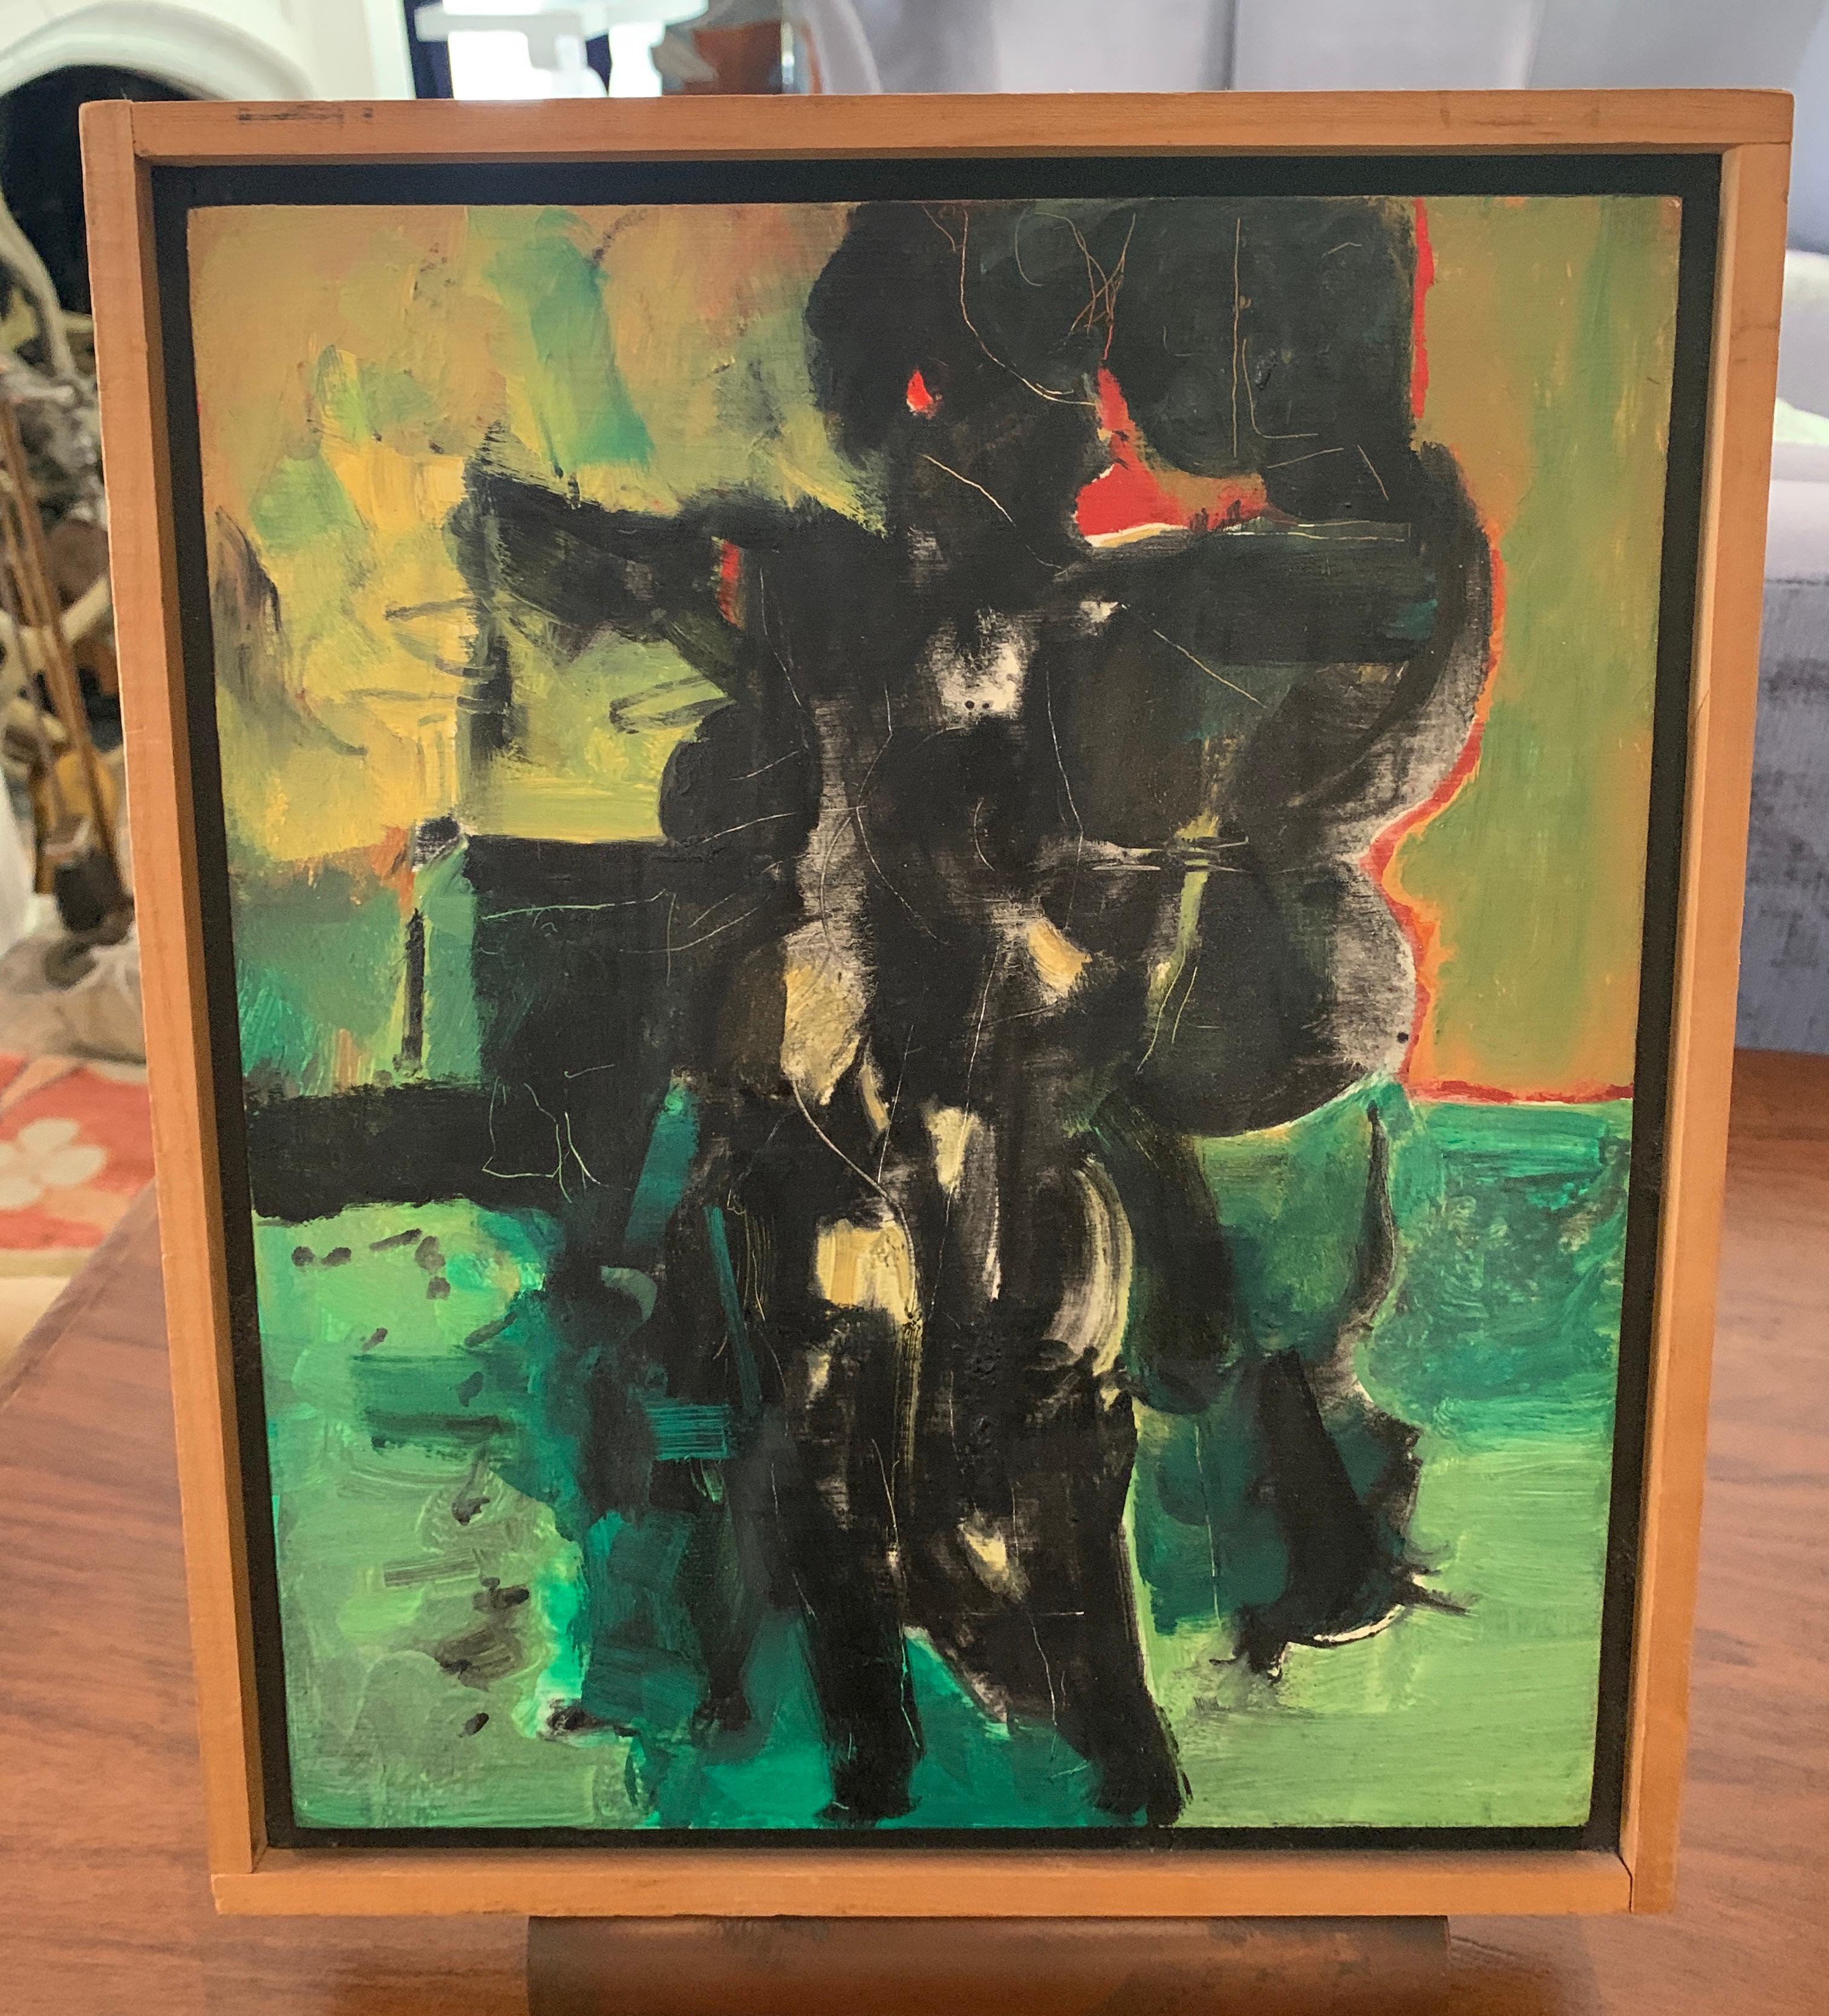 Huile sur gesso d'Edgar L. Ewing, peinte en 1957, intitulée ICON

Né à Hartington, dans le Nebraska, le 17 janvier 1913, Edgar L.Awing étudie d'abord à l'Art Institute of Chicago sous la direction de Boris Anisfeld. Après avoir obtenu son diplôme